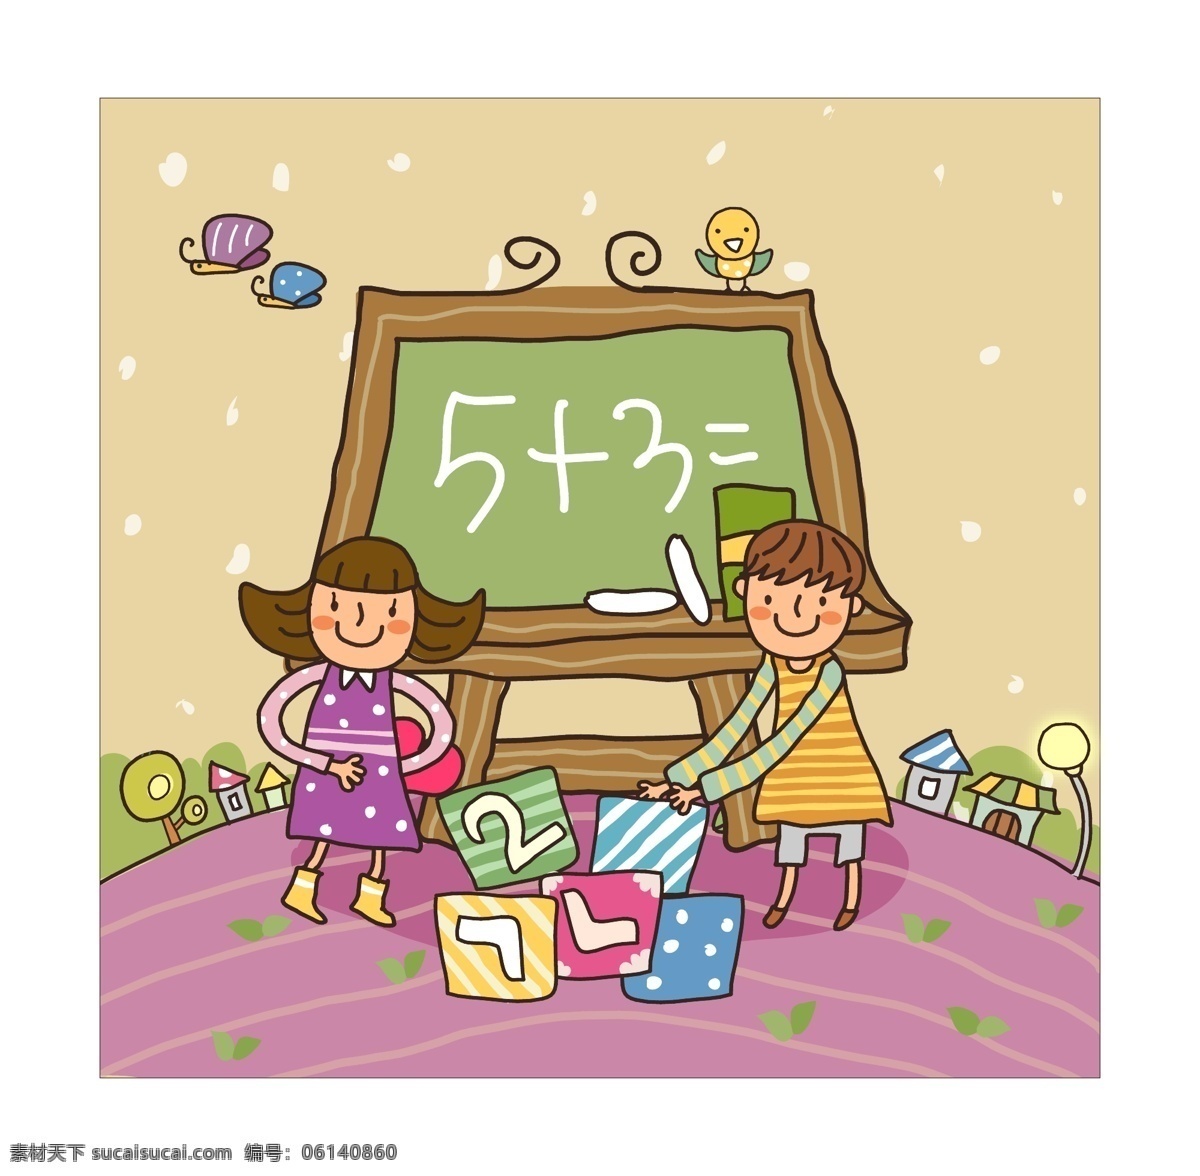 黑板 旁 做 加法 算术题 儿童 插画 儿童插画 教育 卡通 人物插画 少儿 矢量图 童年 学习 童趣 游戏 玩耍 矢量人物